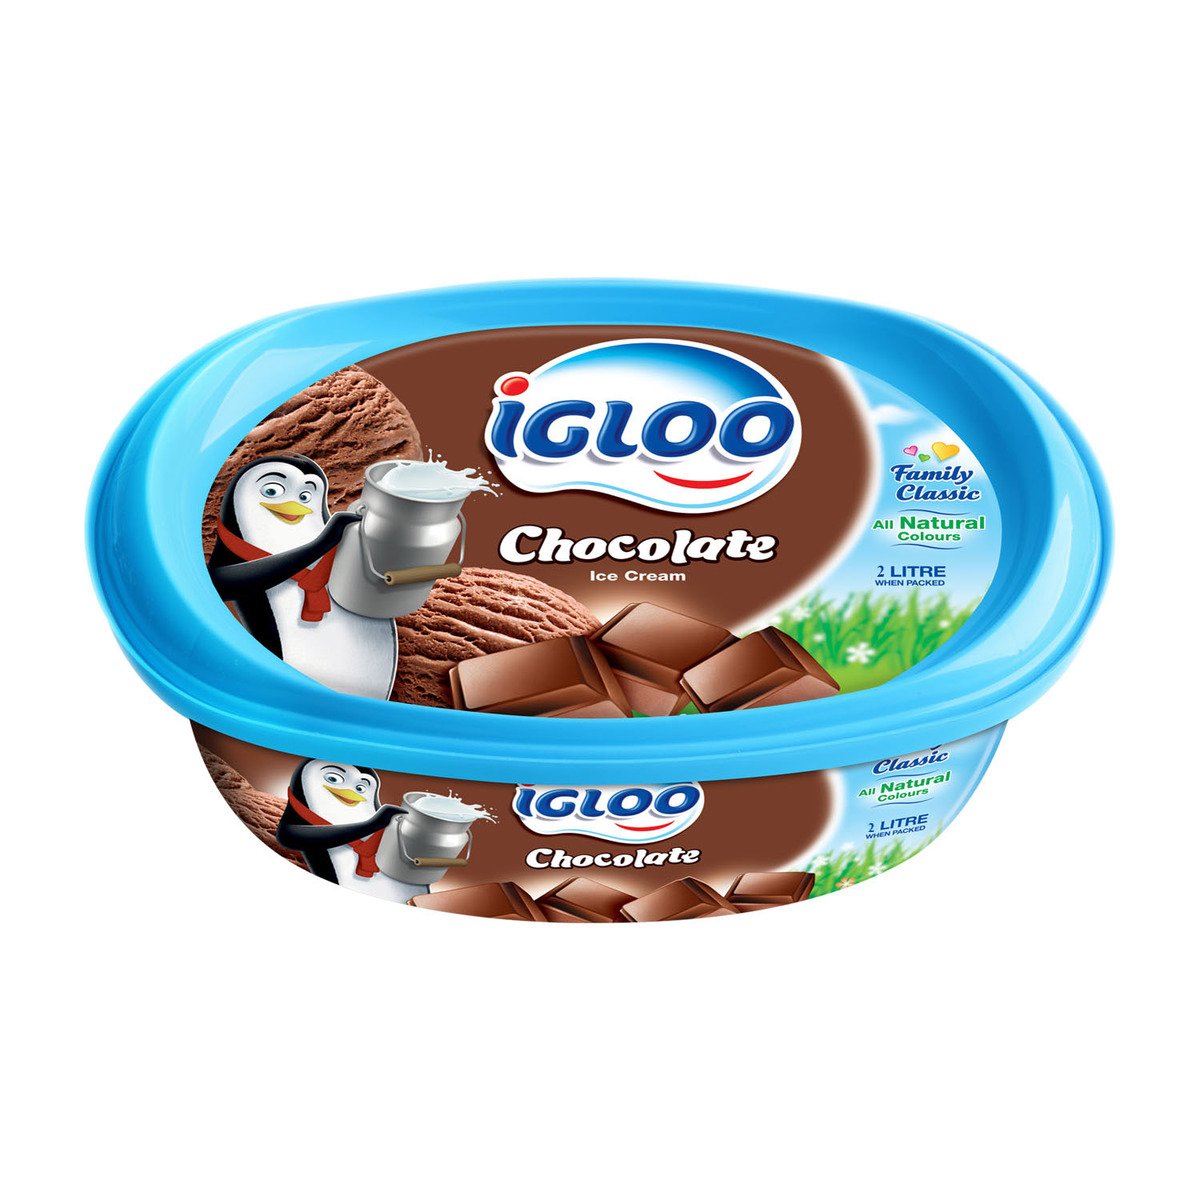 اشتري قم بشراء آيس كريم شوكولاتة إيجلو 2 لتر Online at Best Price من الموقع - من لولو هايبر ماركت Ice Cream Take Home في الامارات